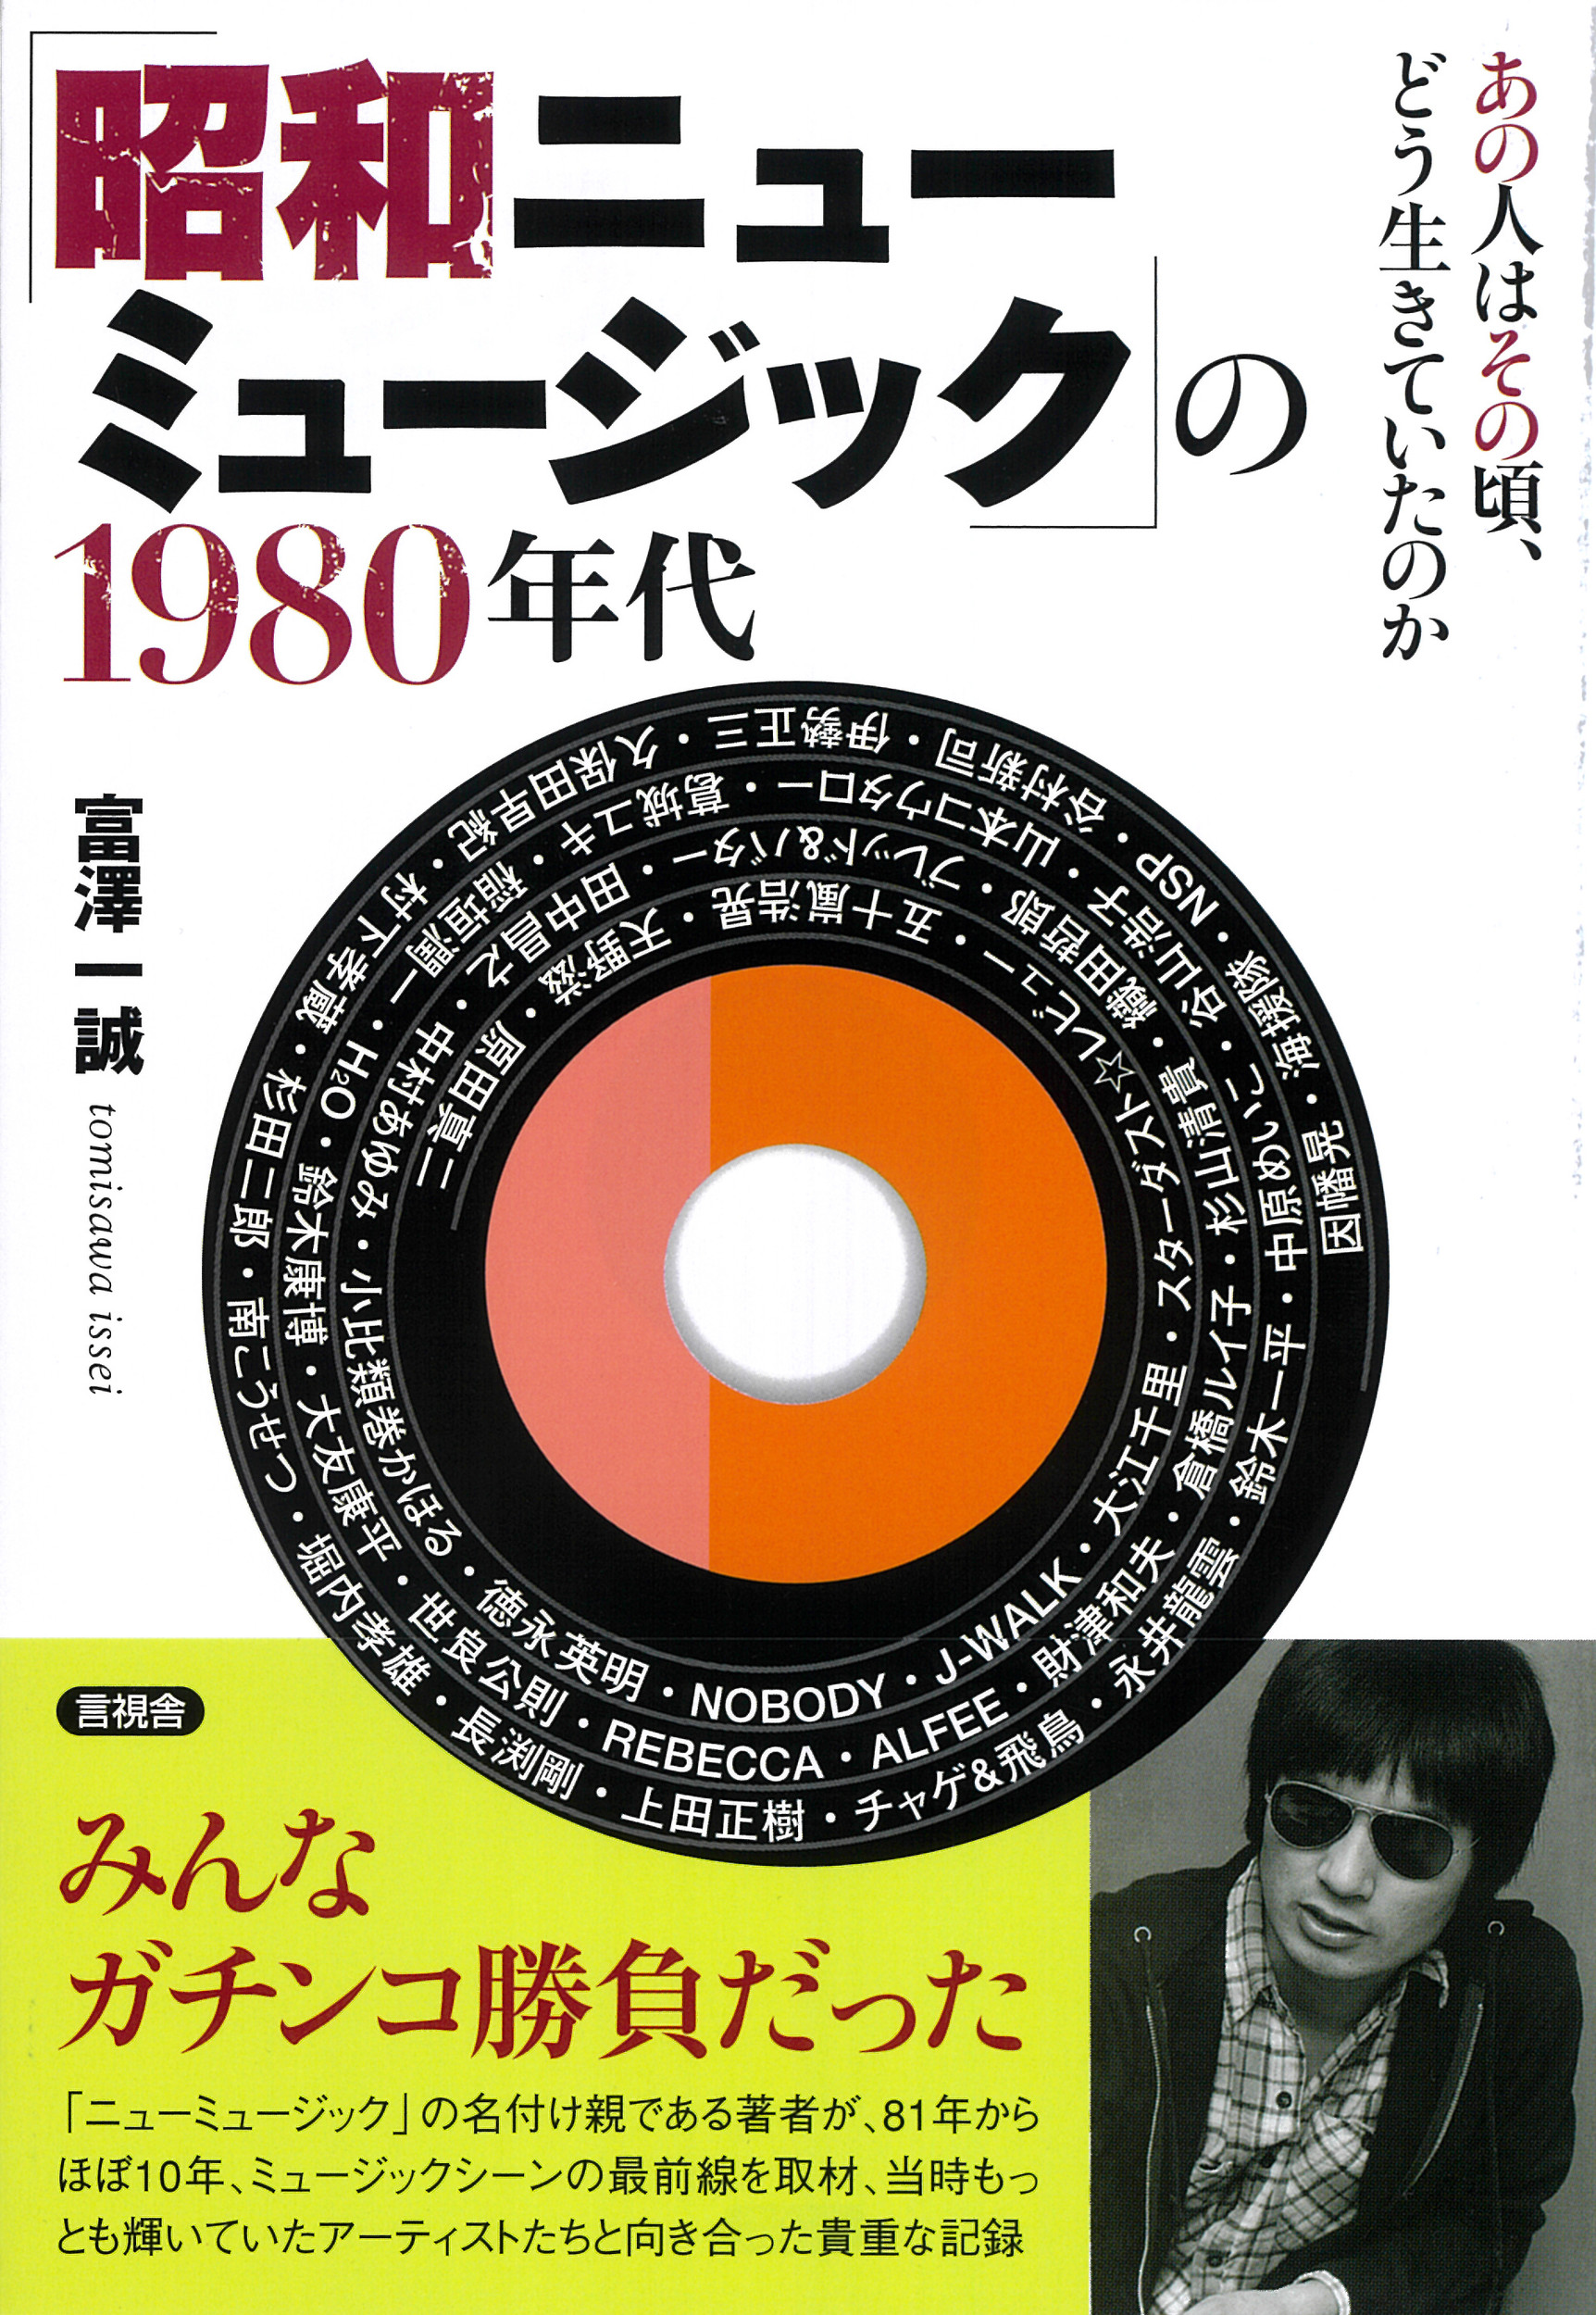 「昭和ニューミュージック」の1980年代の商品画像